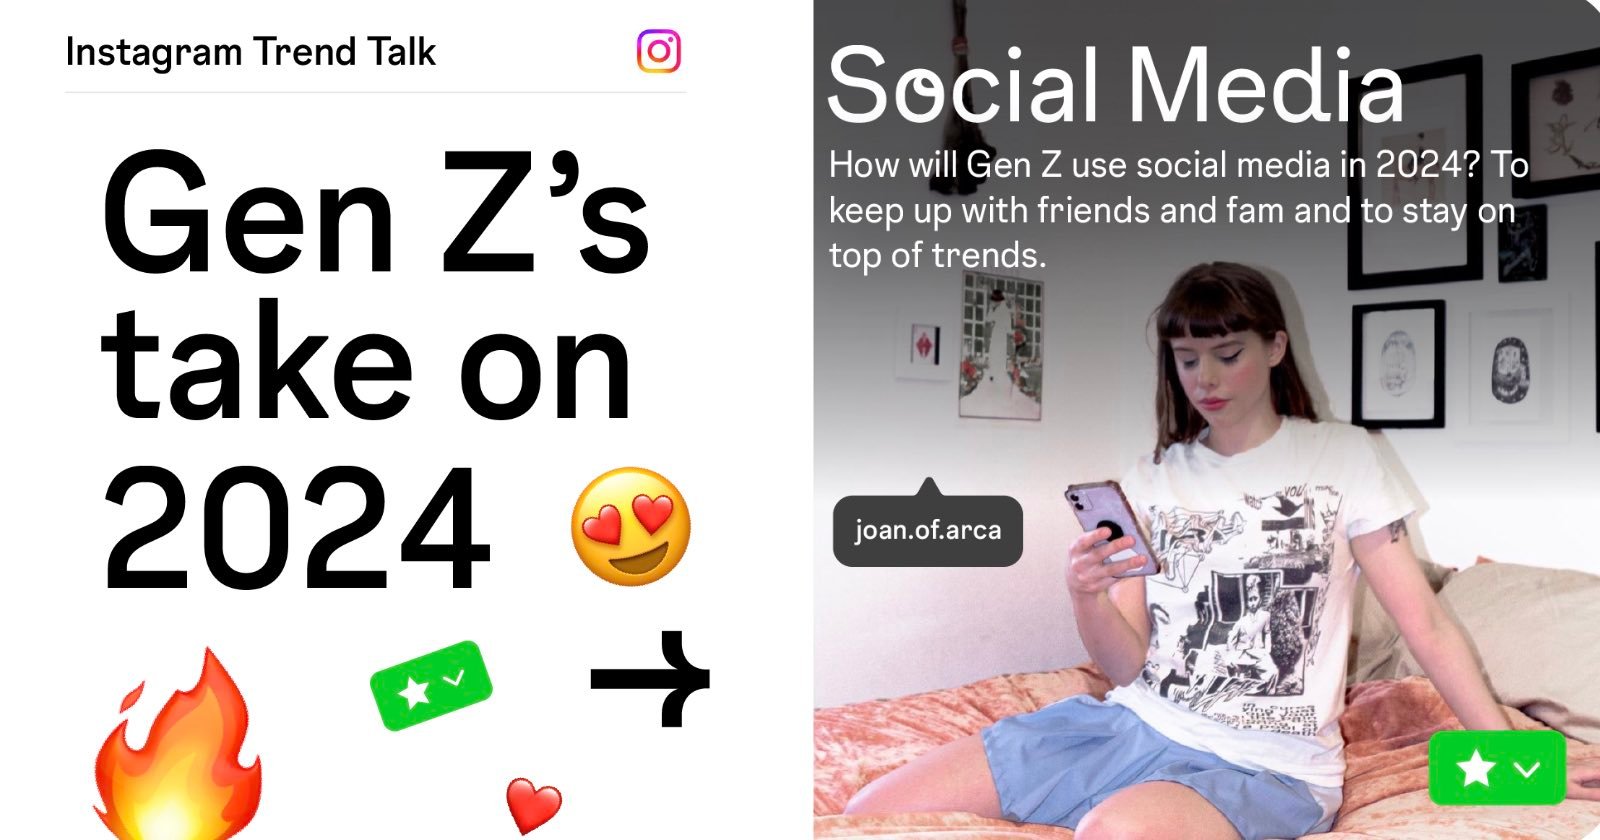 Instagram Reveals Top Trends That Gen Z Will Drive in 2024